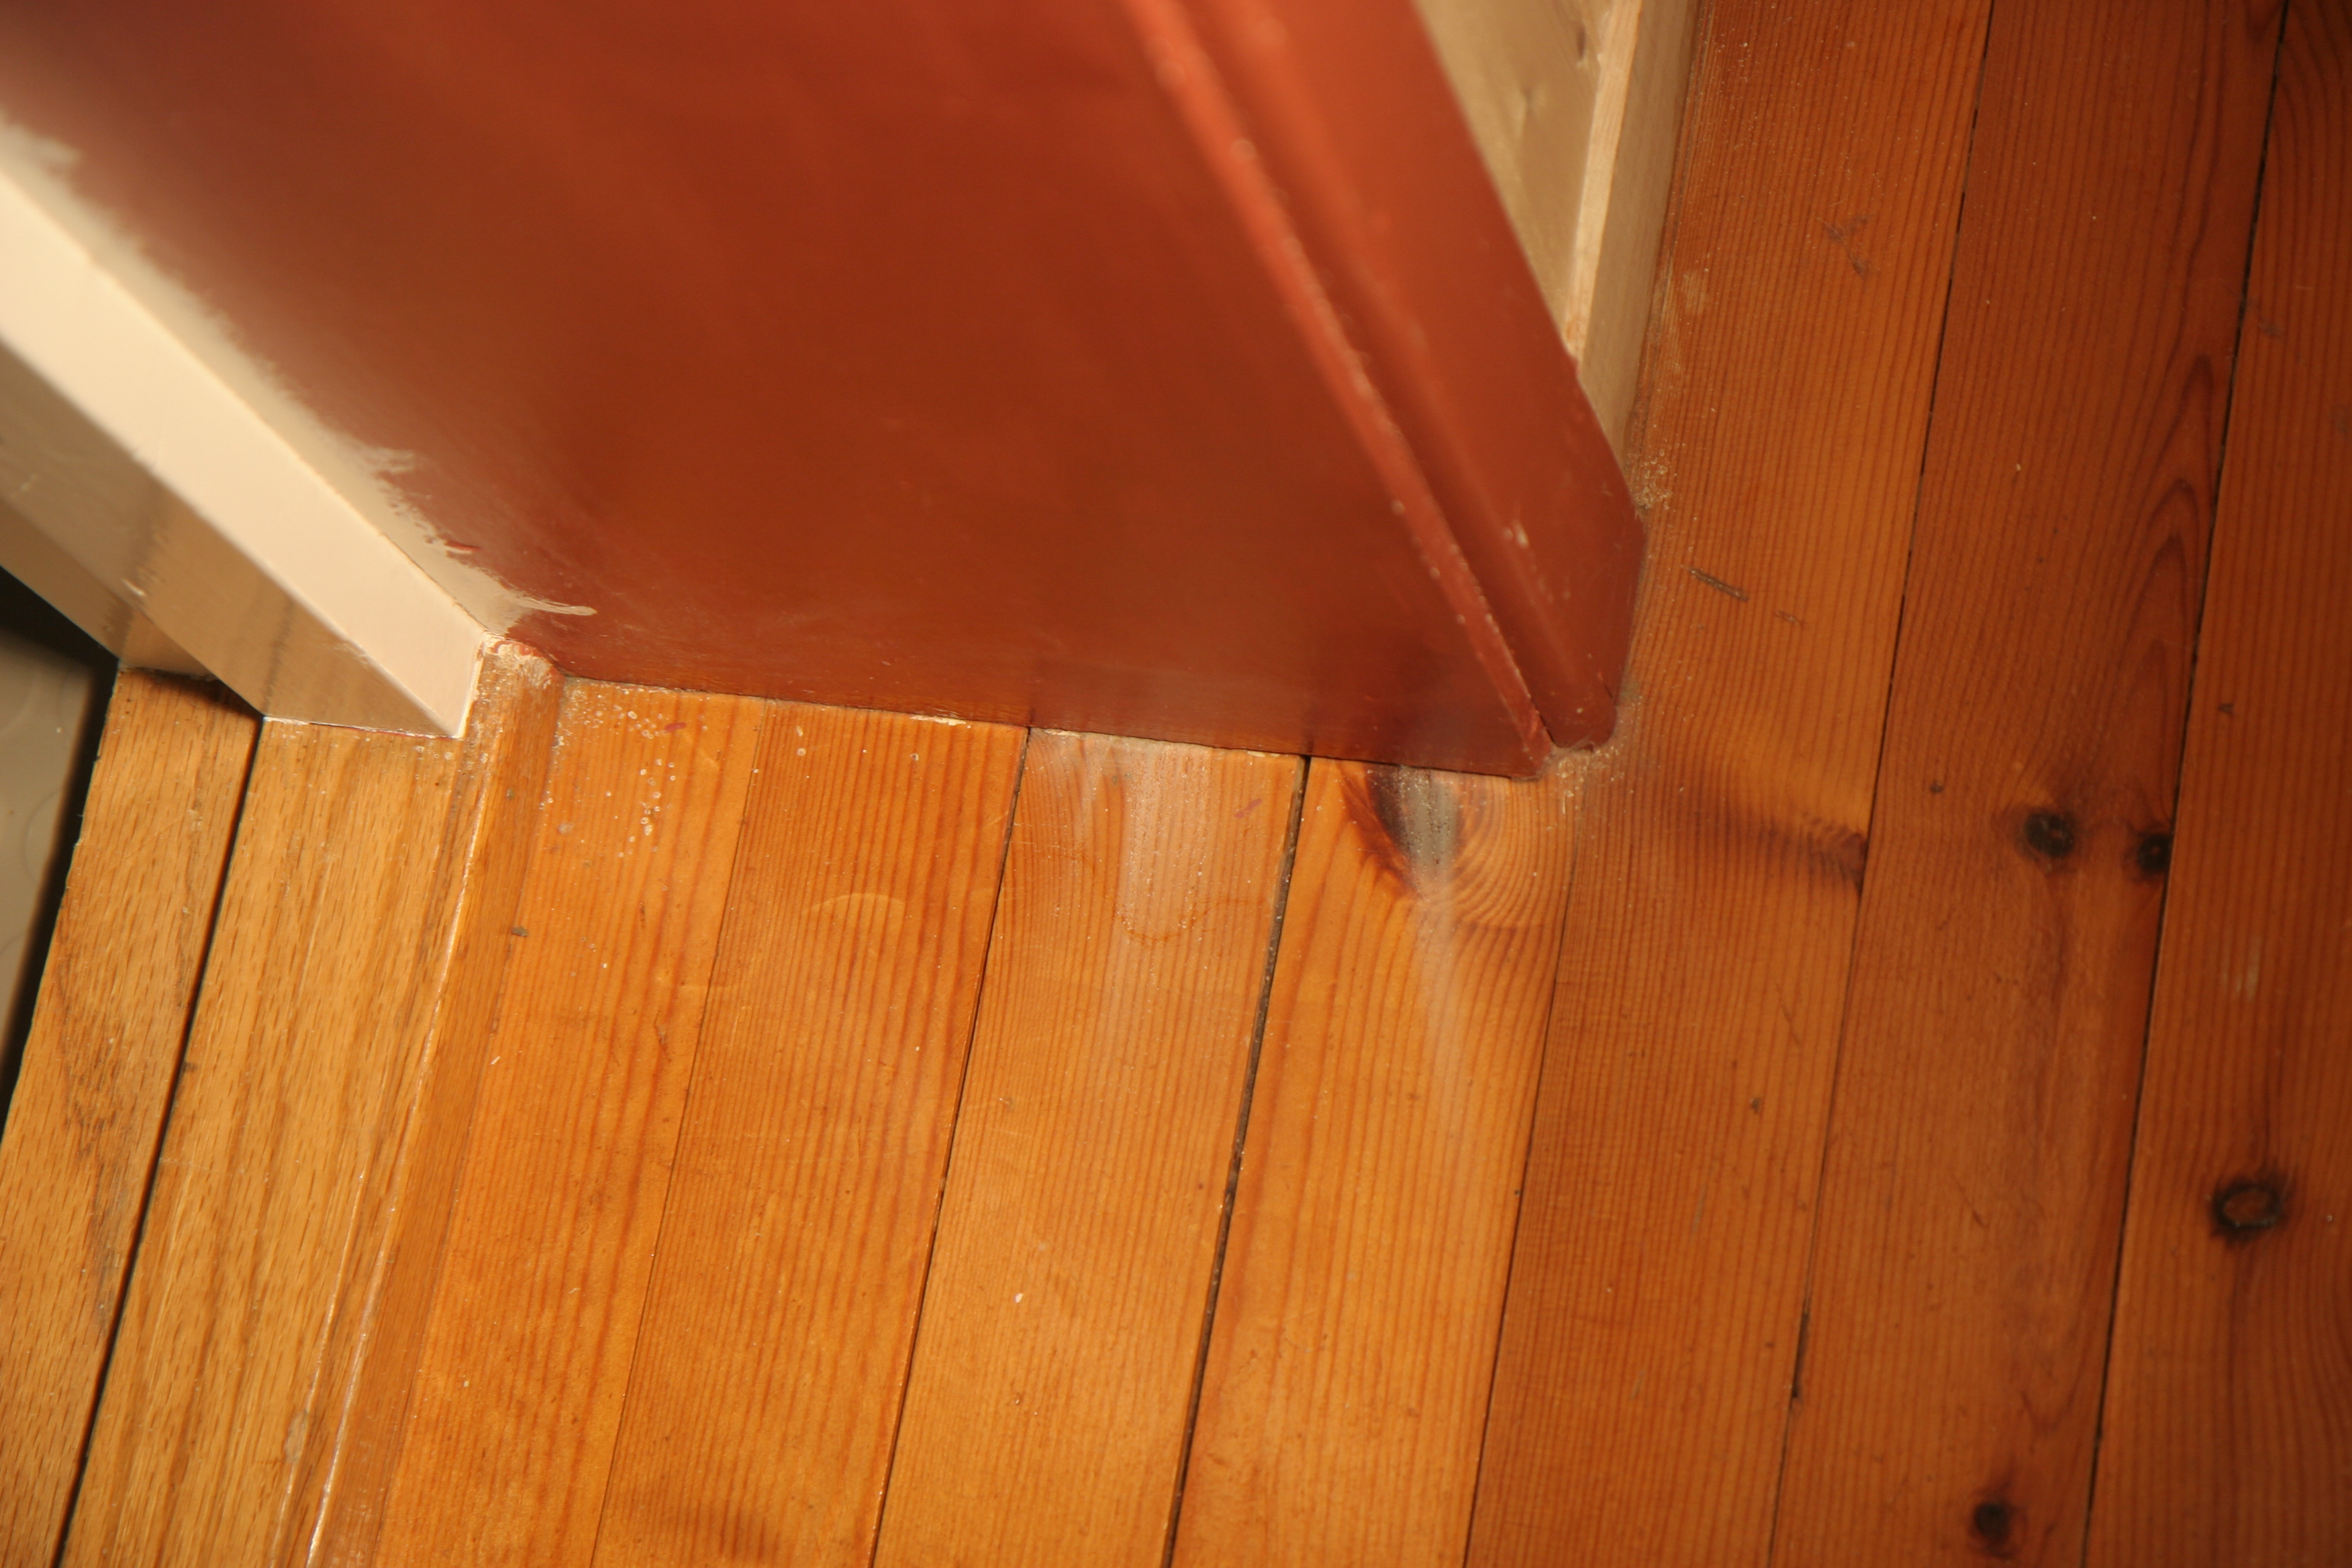 Nytt vaskerom i kjelleren - Blips første (ordentlige) støpte golv - IMG_4818.JPG - Blip